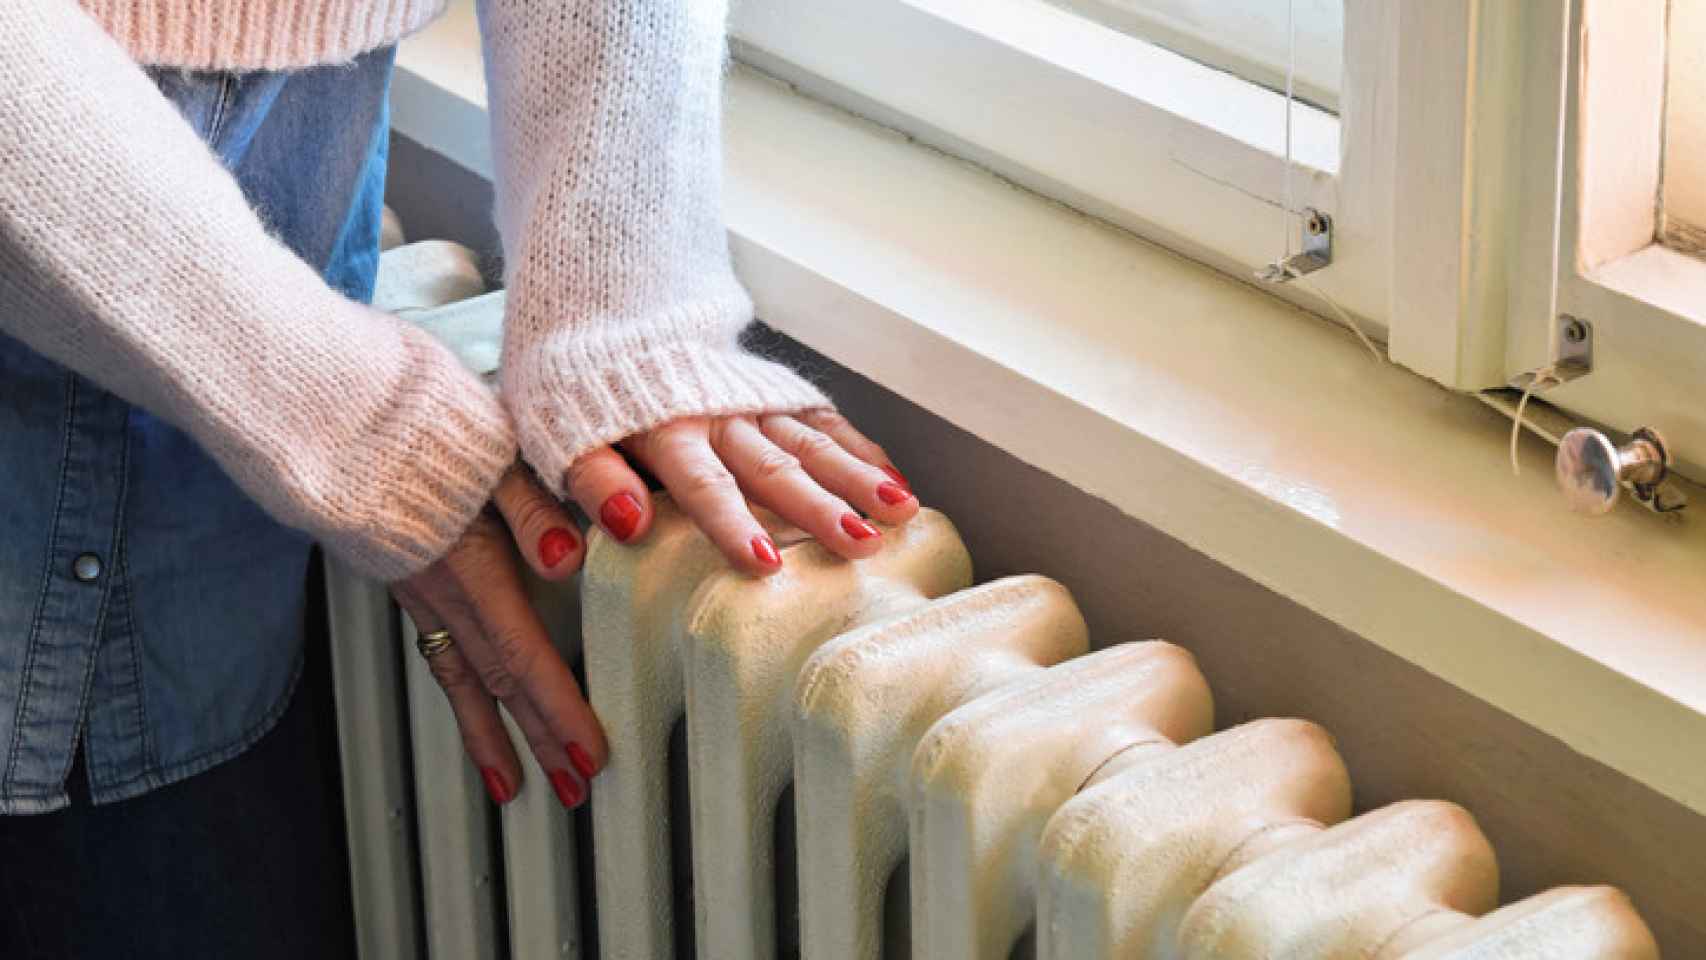 El truco del secador para limpiar la suciedad oculta tras los radiadores en  pocos segundos